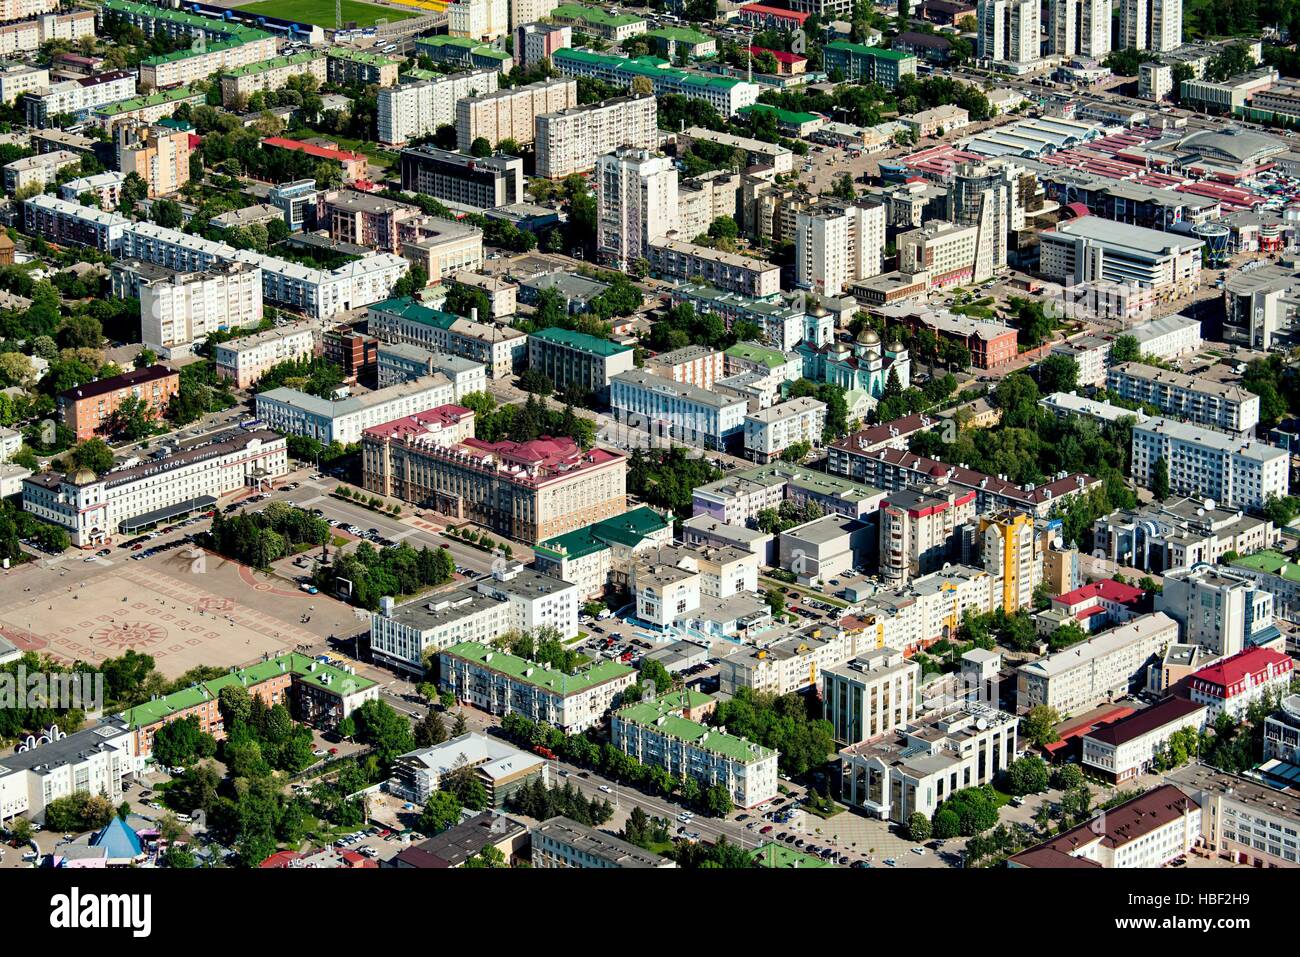 rusia-belgorod-oblast-la-ciudad-de-belgorod-hbf2h9.jpg